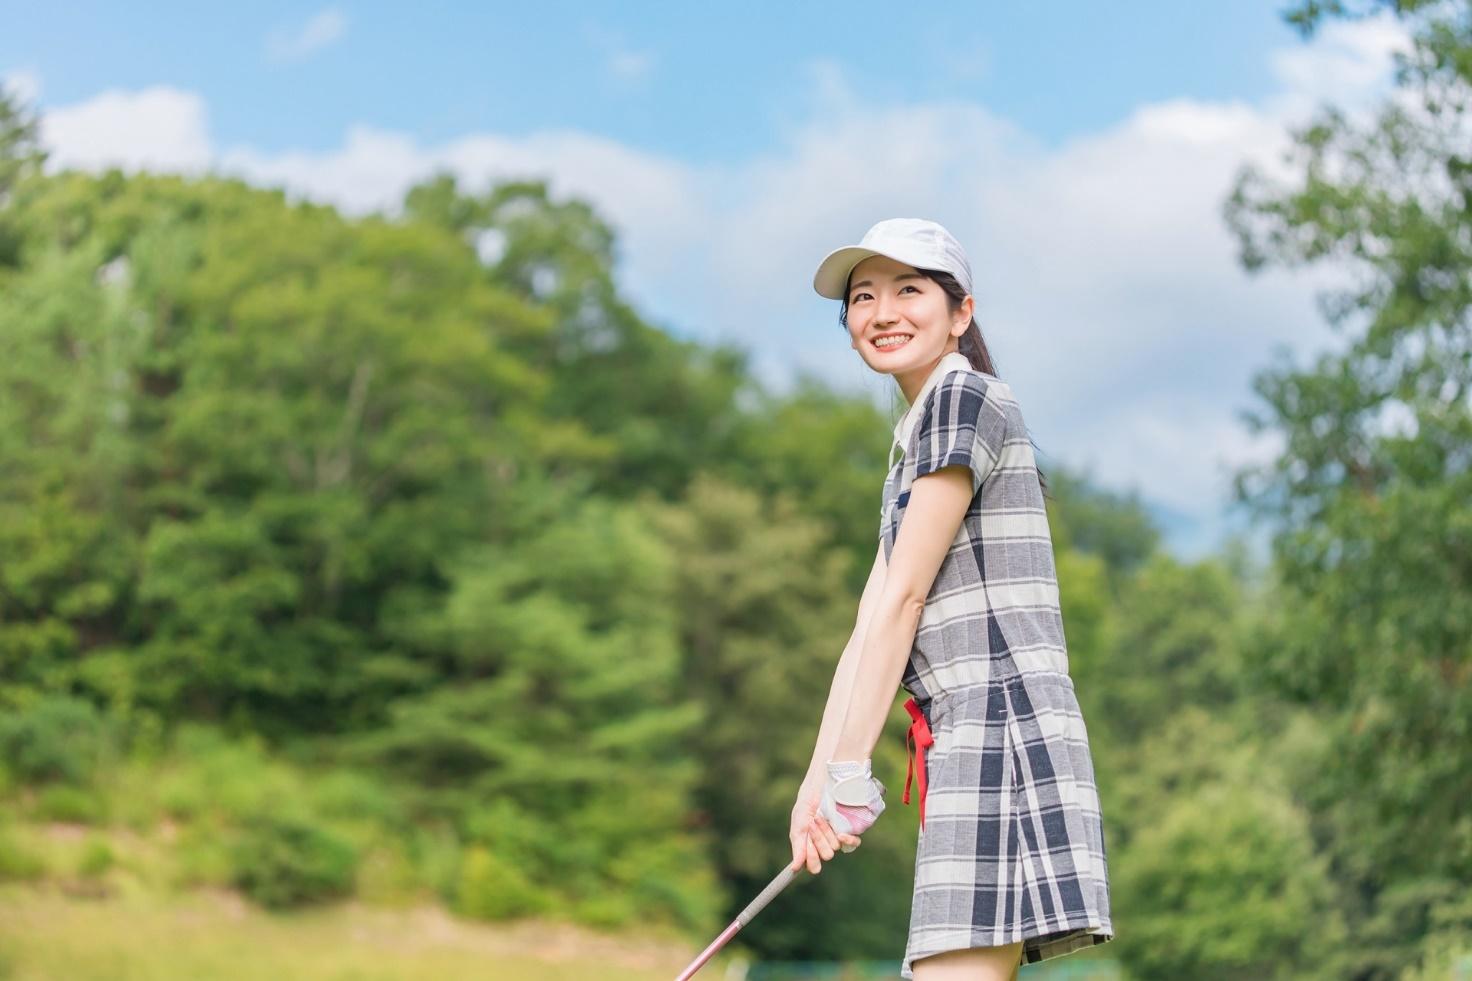 【接待ゴルフ】従業員のモチベアップにつながるおすすめ景品4選